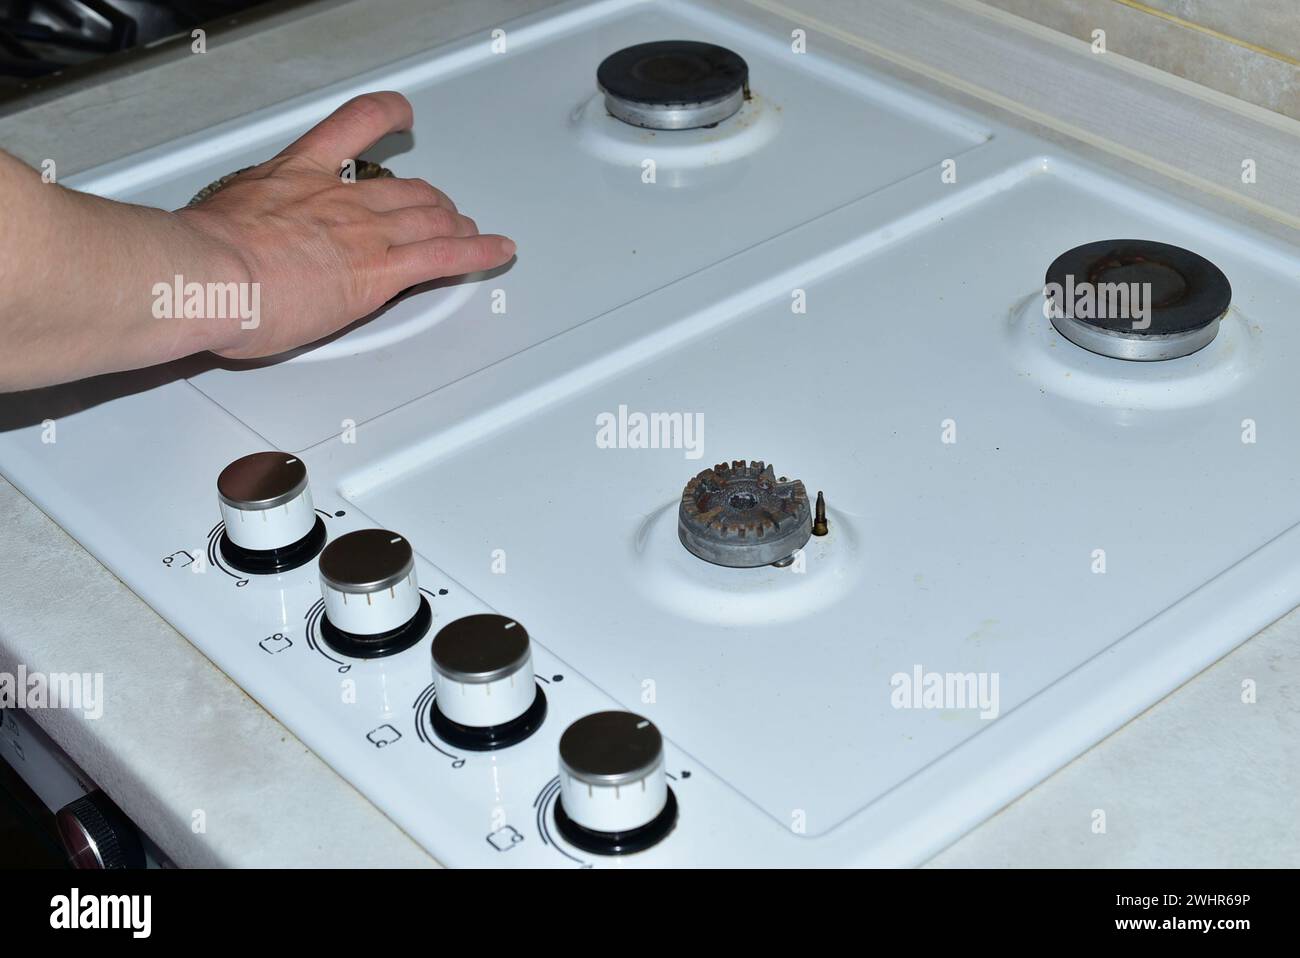 Sur l'image, la main d'une femme enlève les brûleurs avant de commencer à laver la surface de la cuisinière à gaz. Banque D'Images